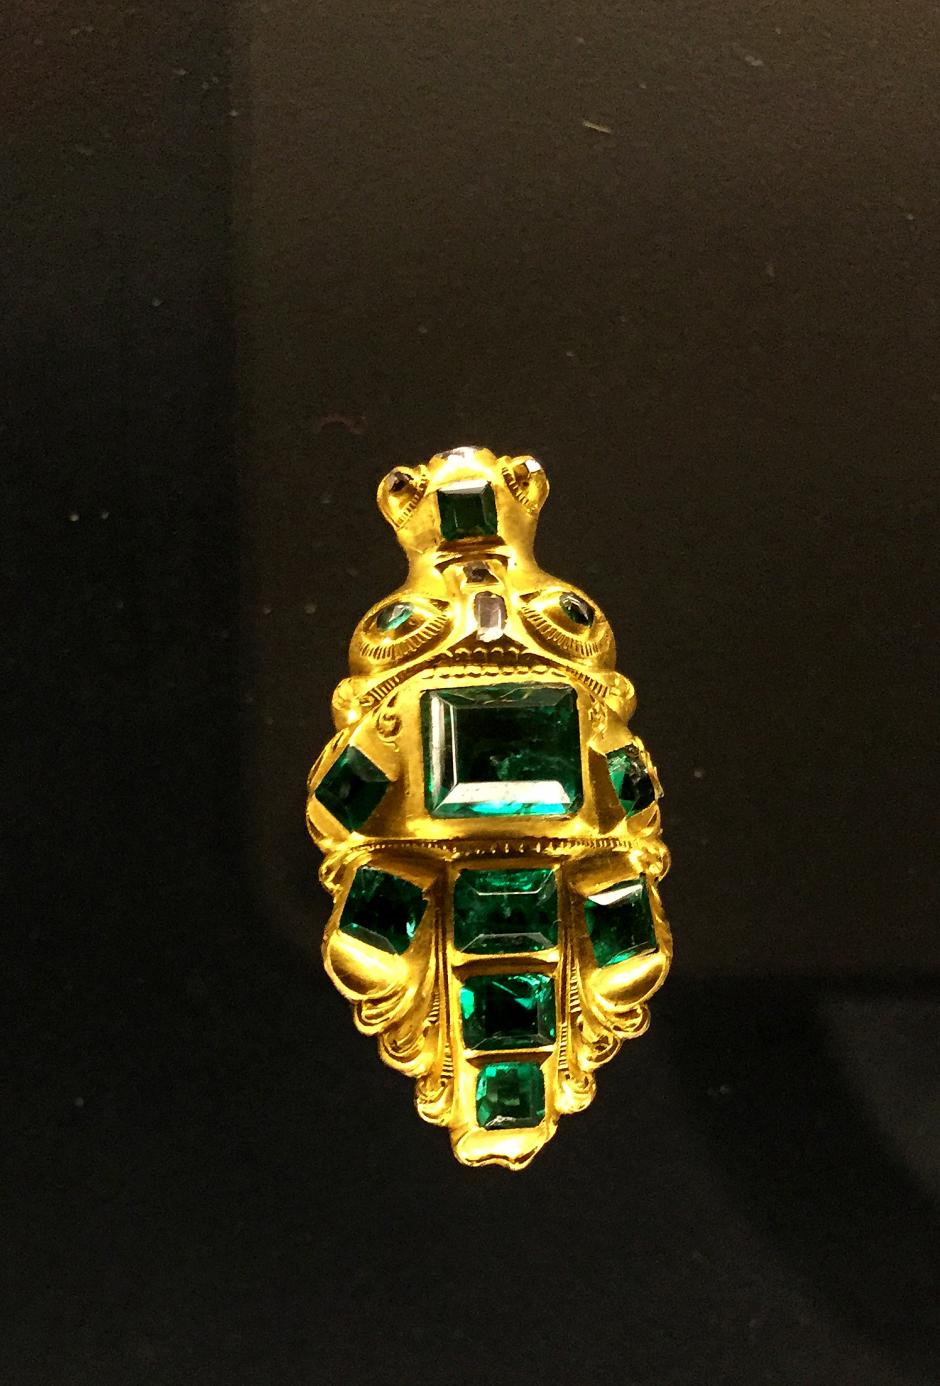 Joyas de oro encontradas en un barco español del siglo XVIII, exhibidas en la ciudad de Mérida en el estado de Yucatán